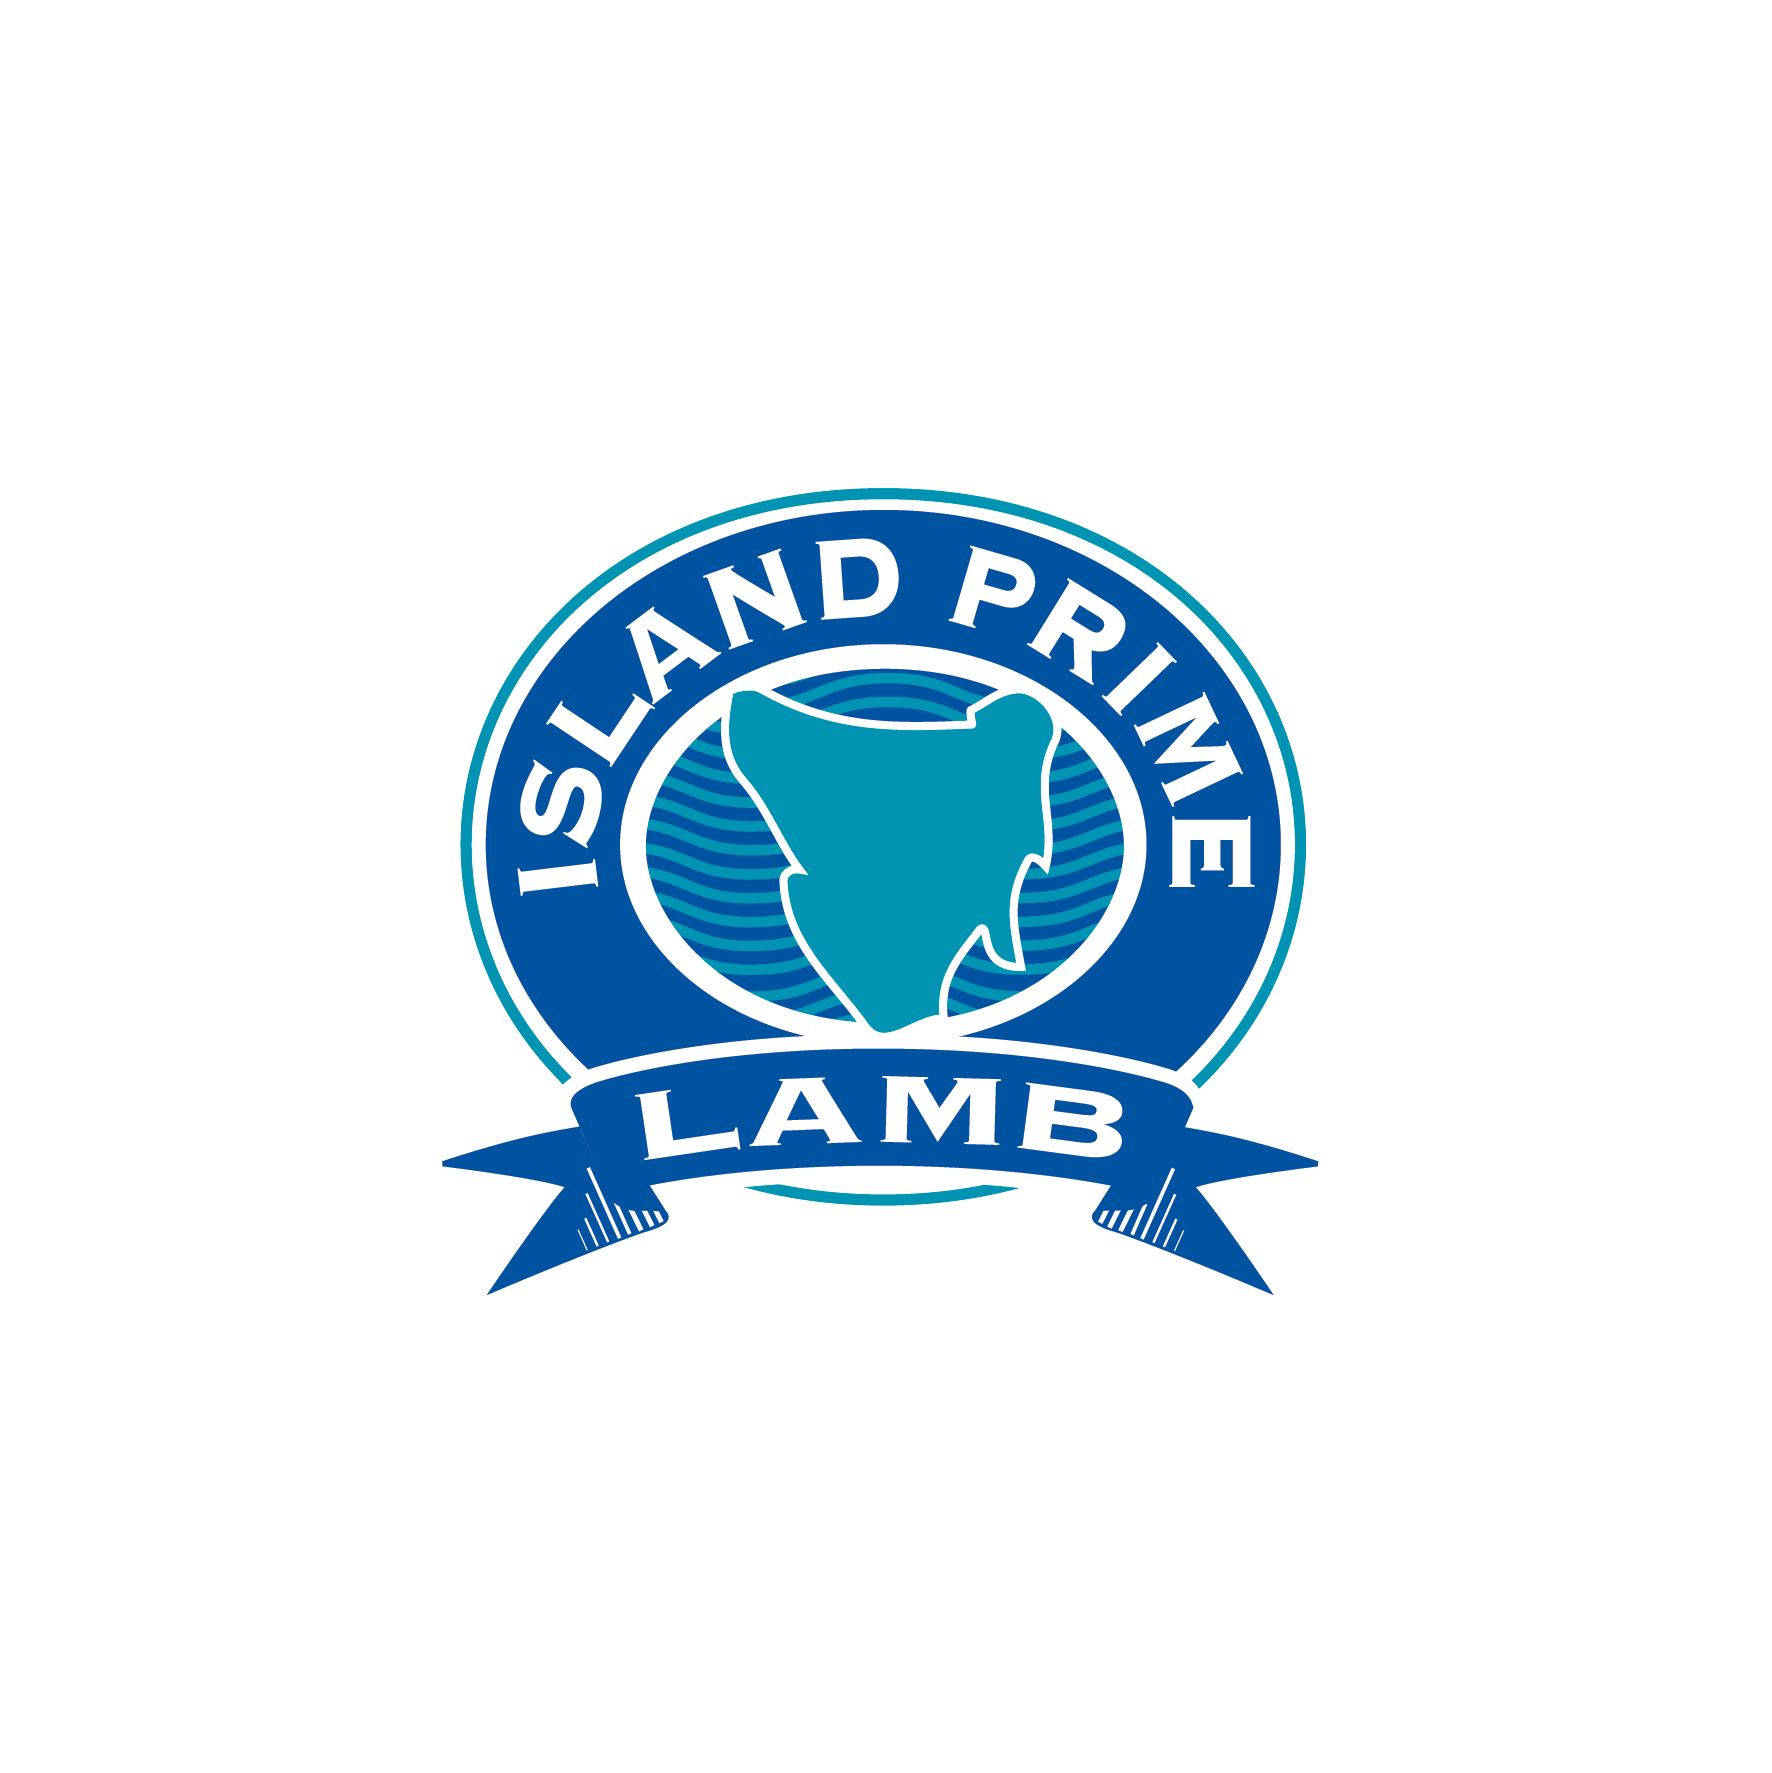 Island Prime Lamb Logo.png